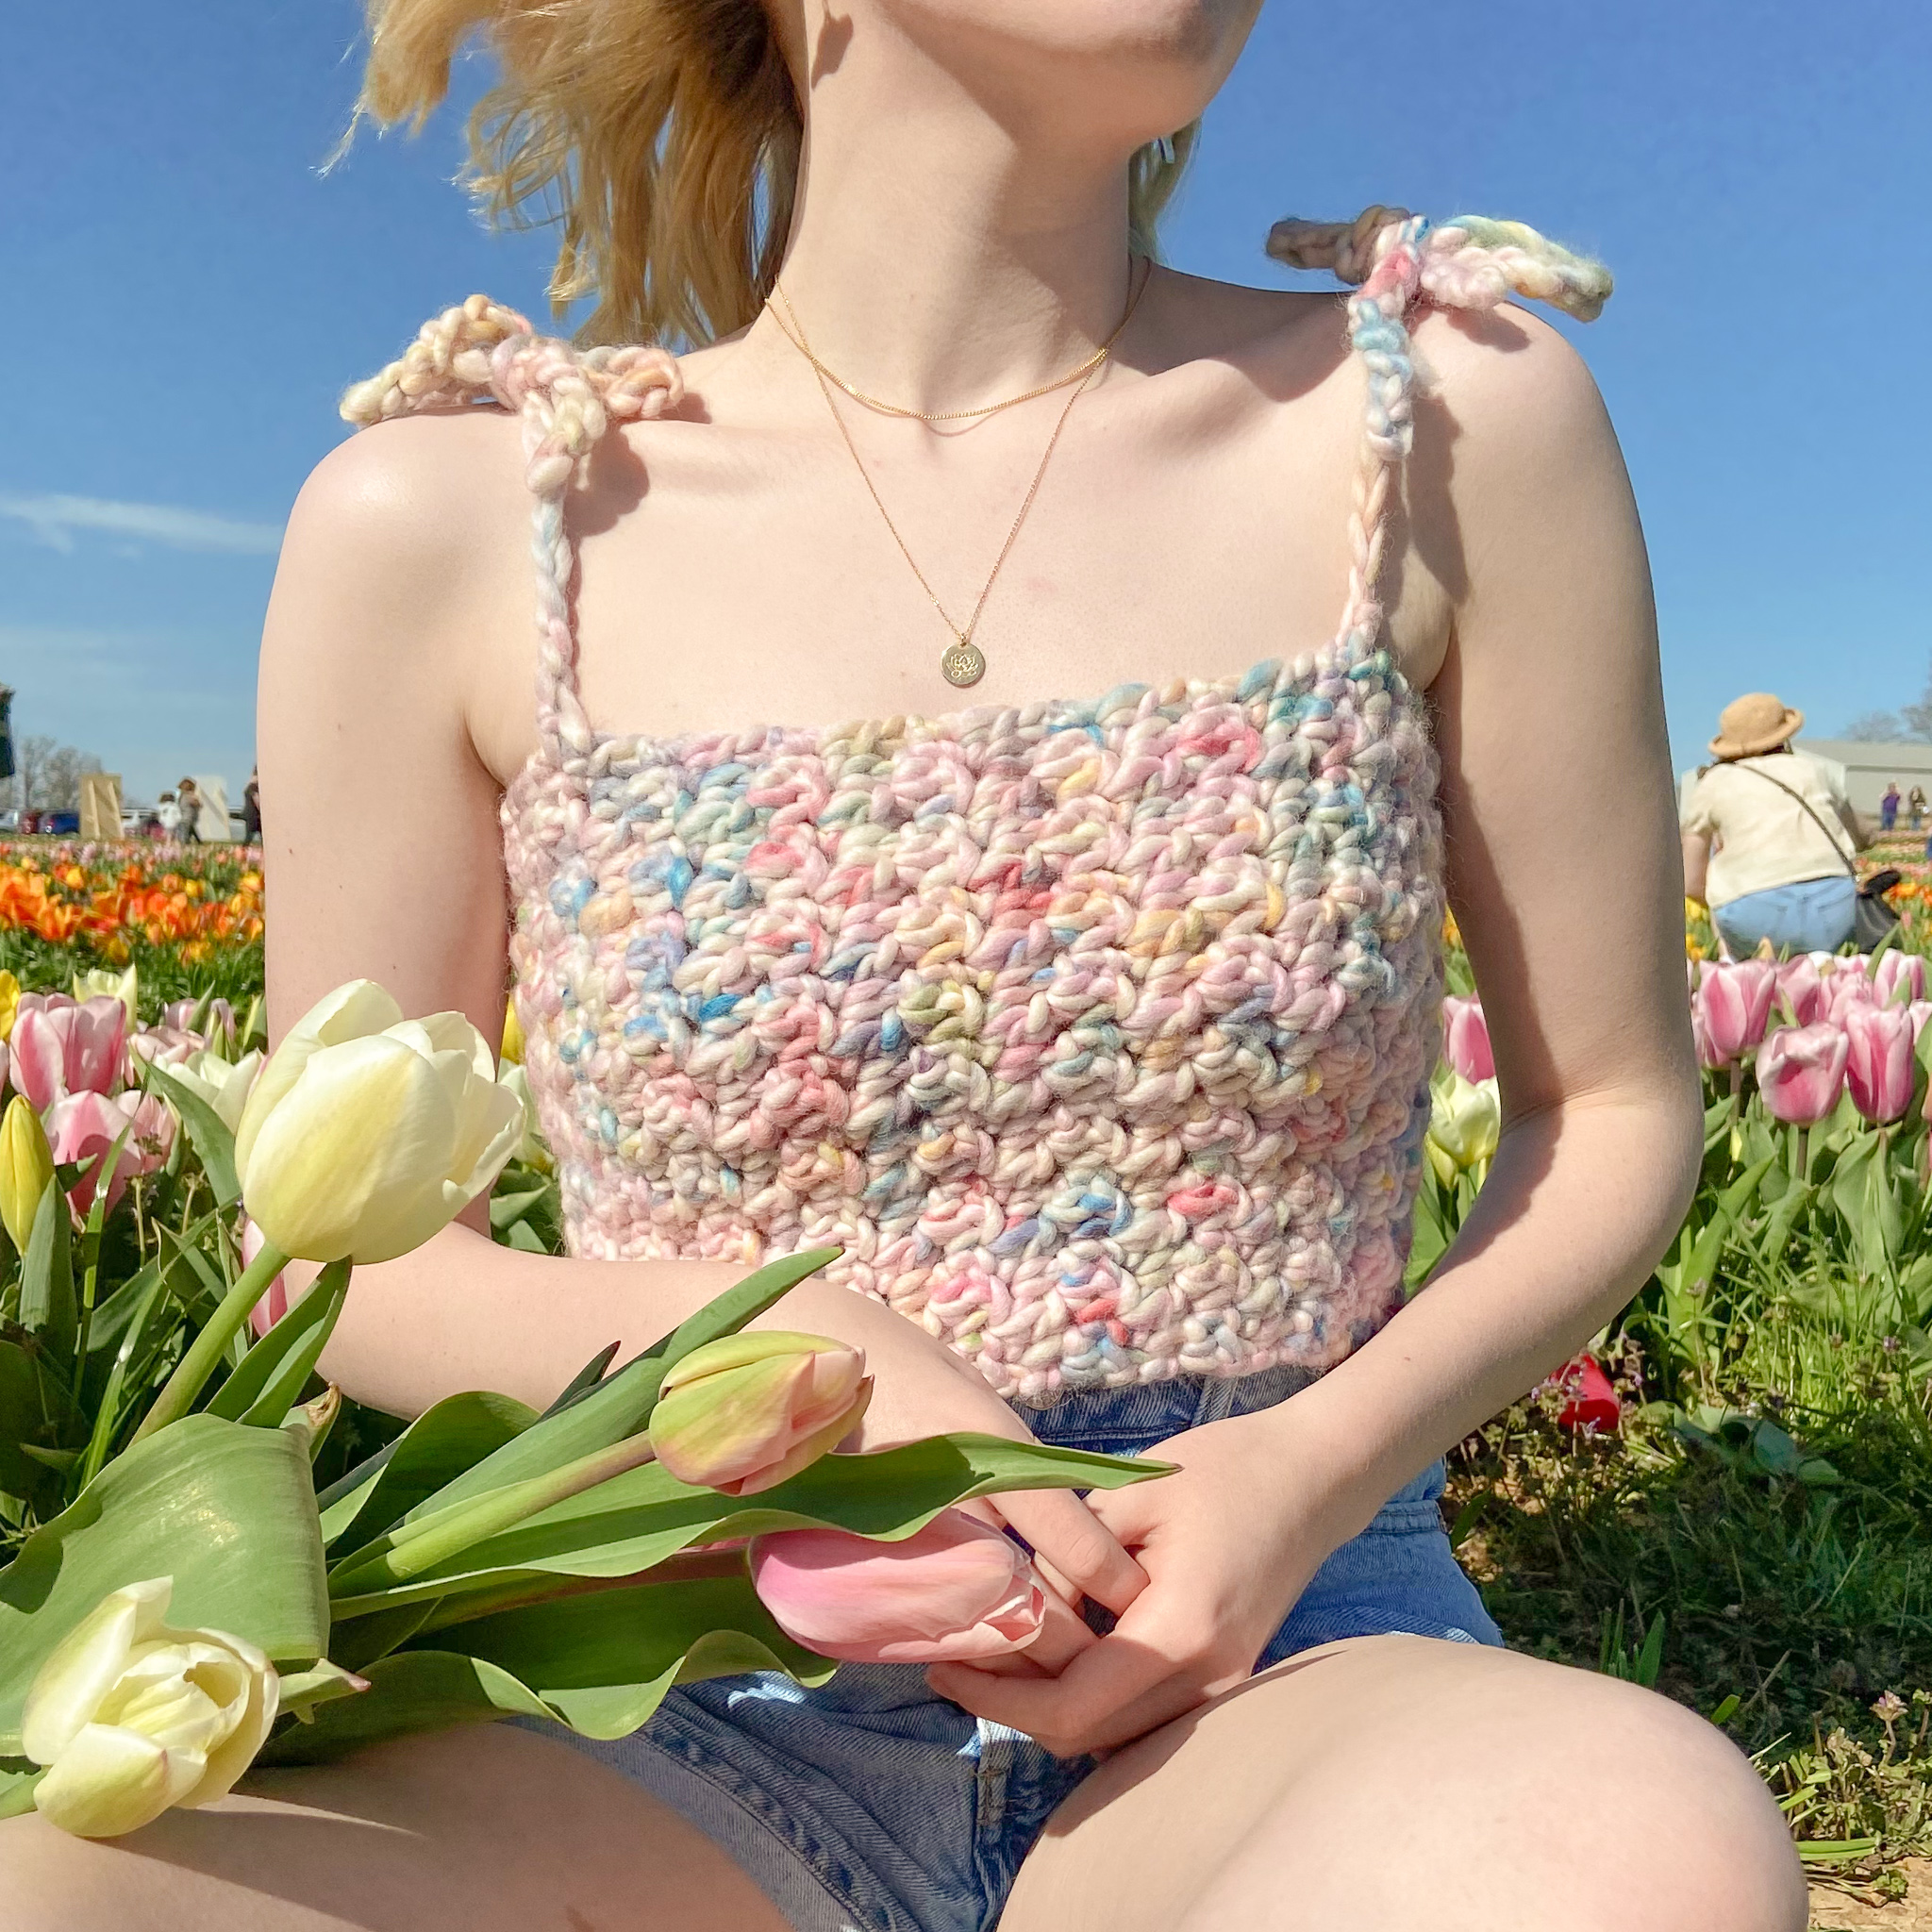 Beginner-Friendly Crochet Tie Tank Top - FREE Pattern + Video